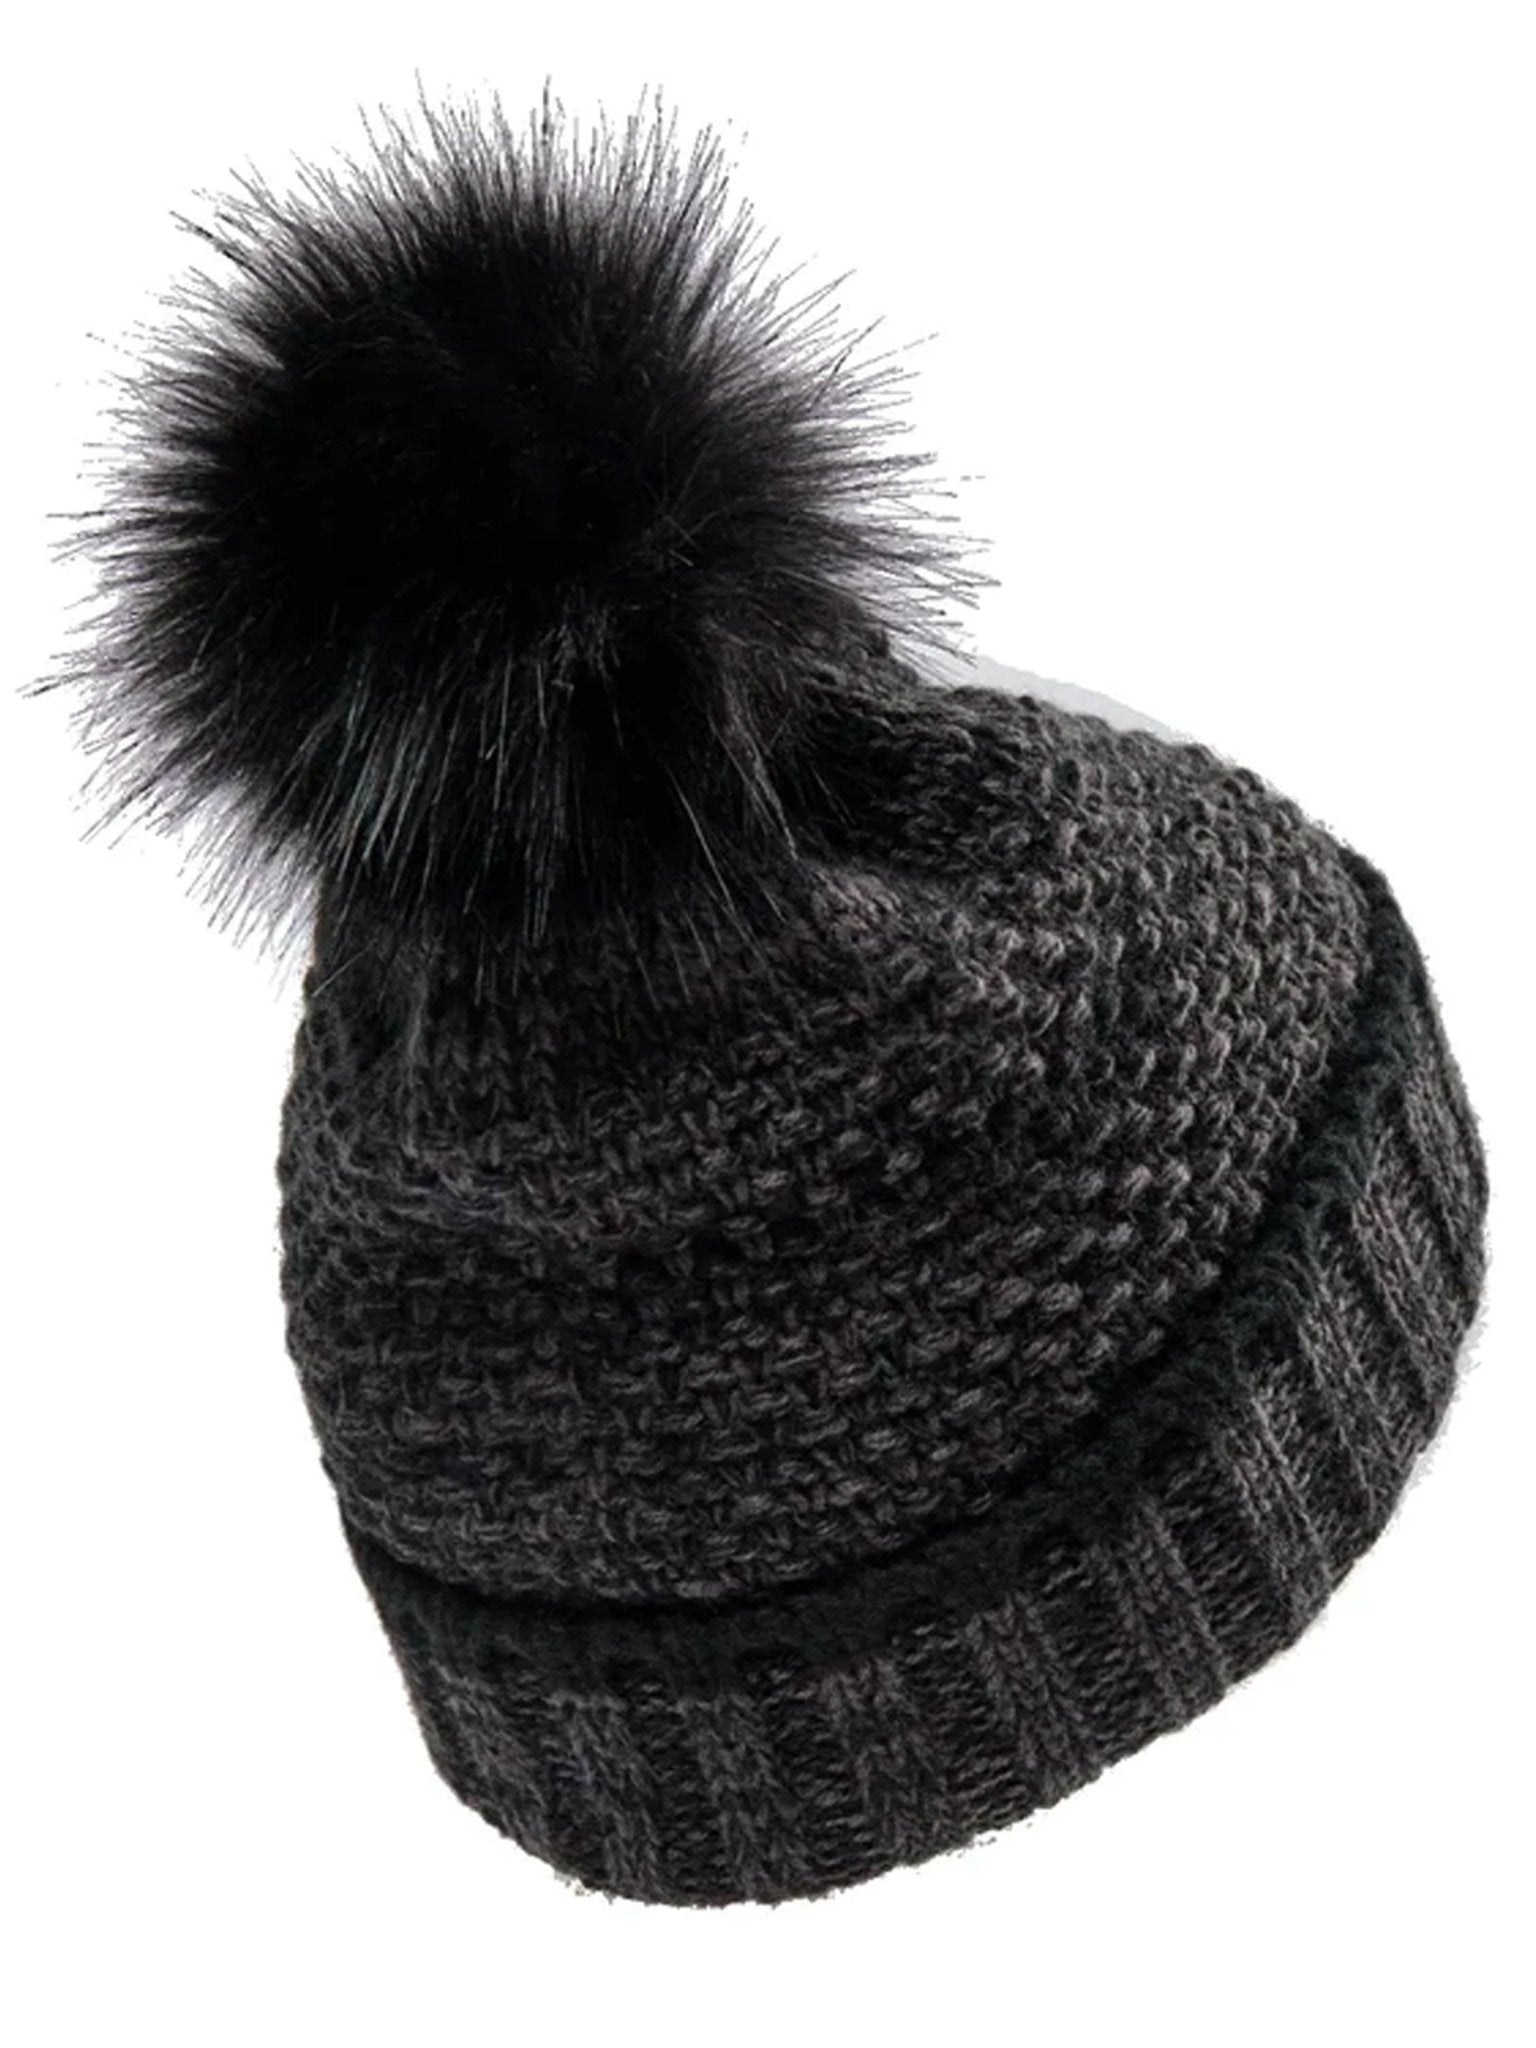 4elementsclothingDeerhunterDeerhunter - Ladies bobble hat knitted country HatLadies Headwear6486-999